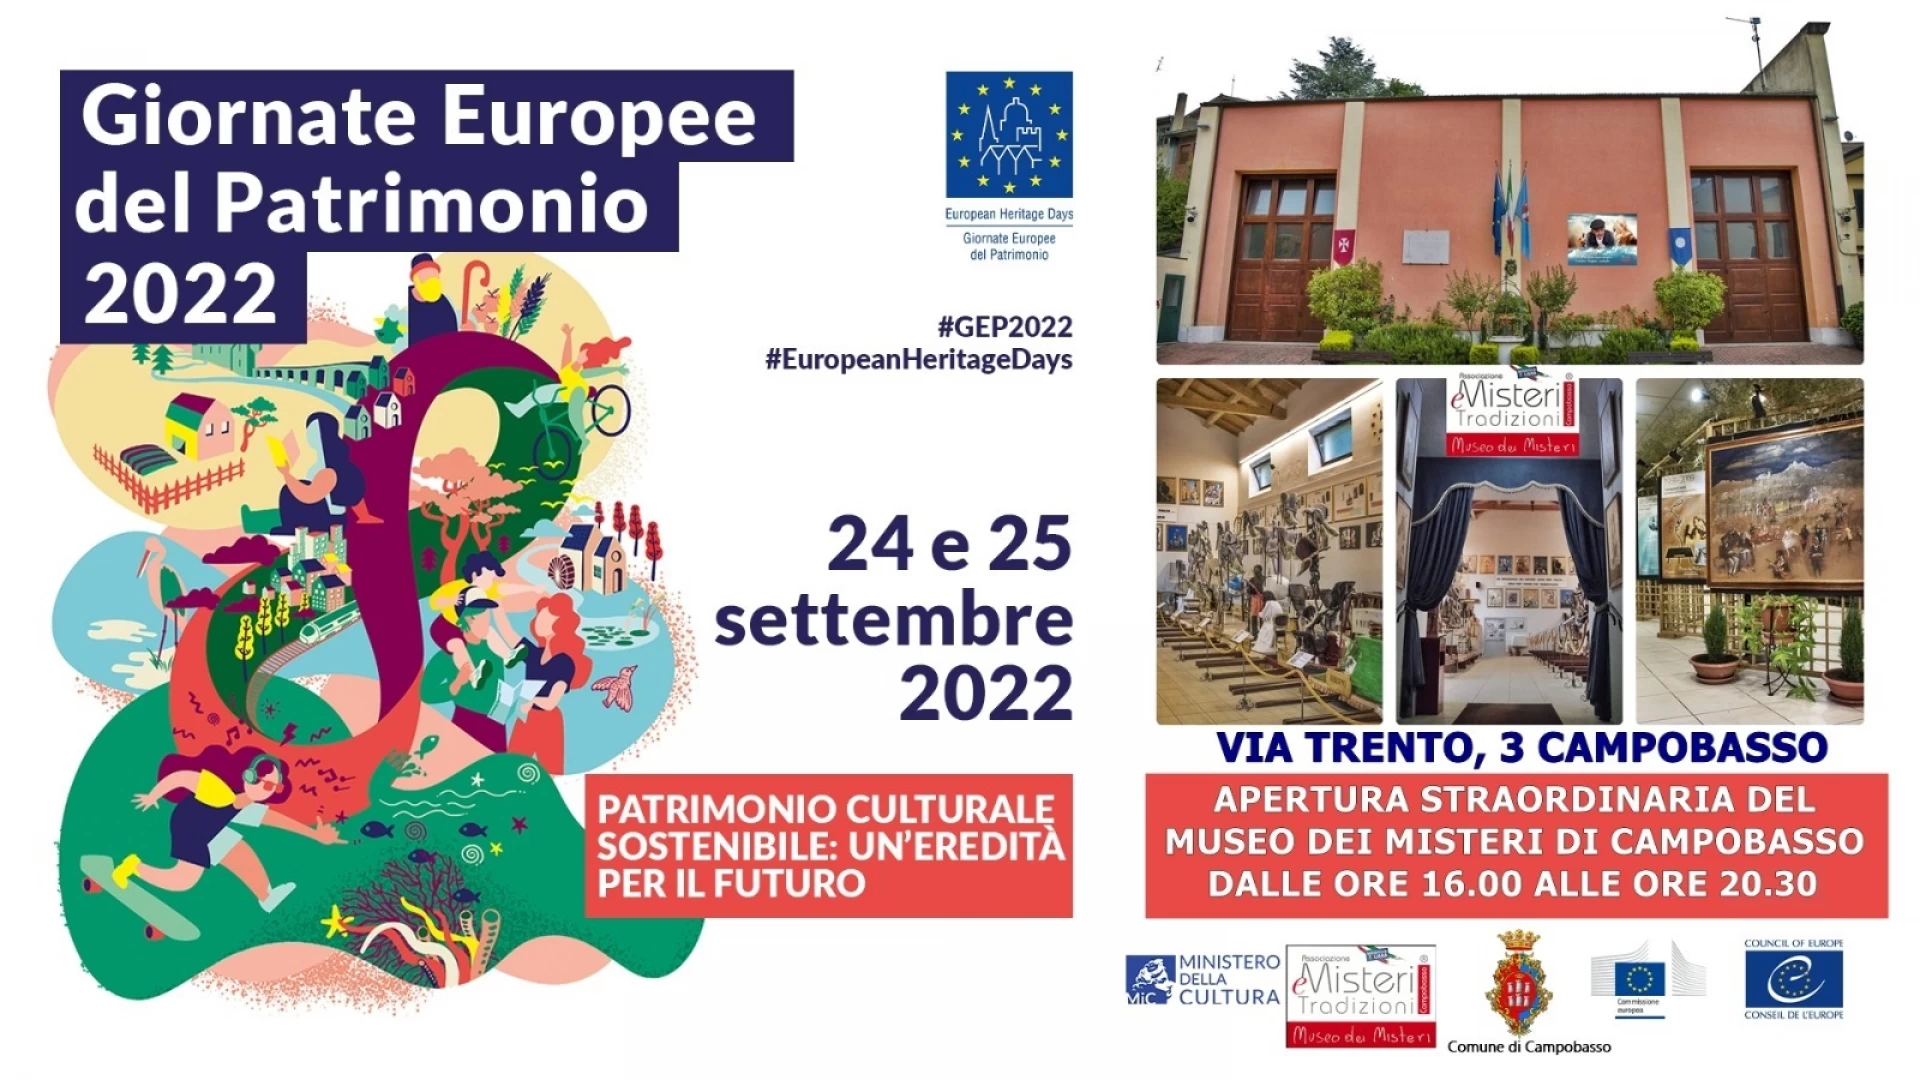 Giornate Europee del Patrimonio 2022, anche il Museo dei Misteri di Campobasso aderisce.